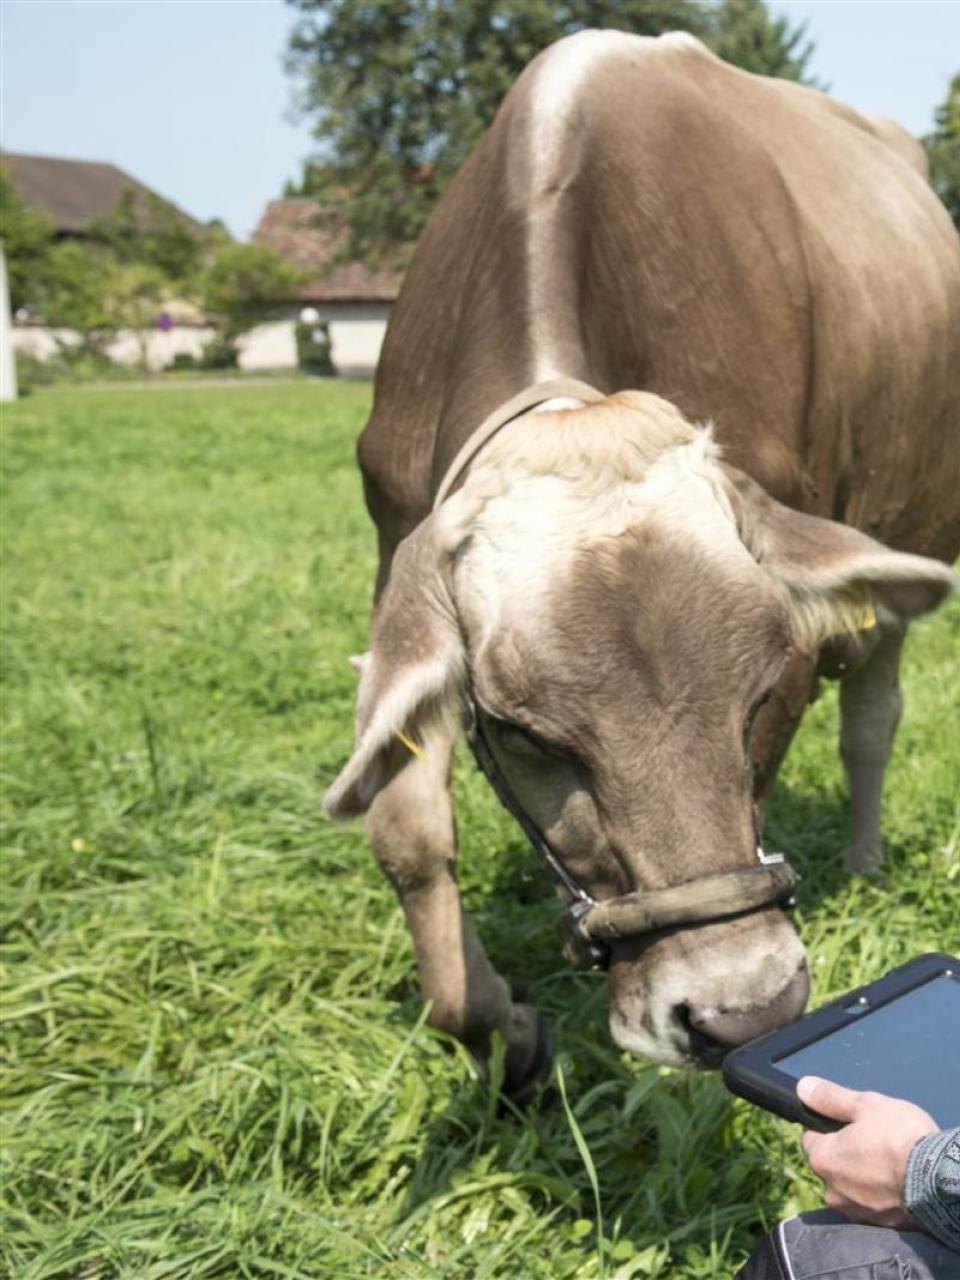 Dank Pedometer und Nasenbandsensor kann das Verhalten der Kühe mit dem Tablet überwacht werden. ©Agroscope, Gabriela Brändle